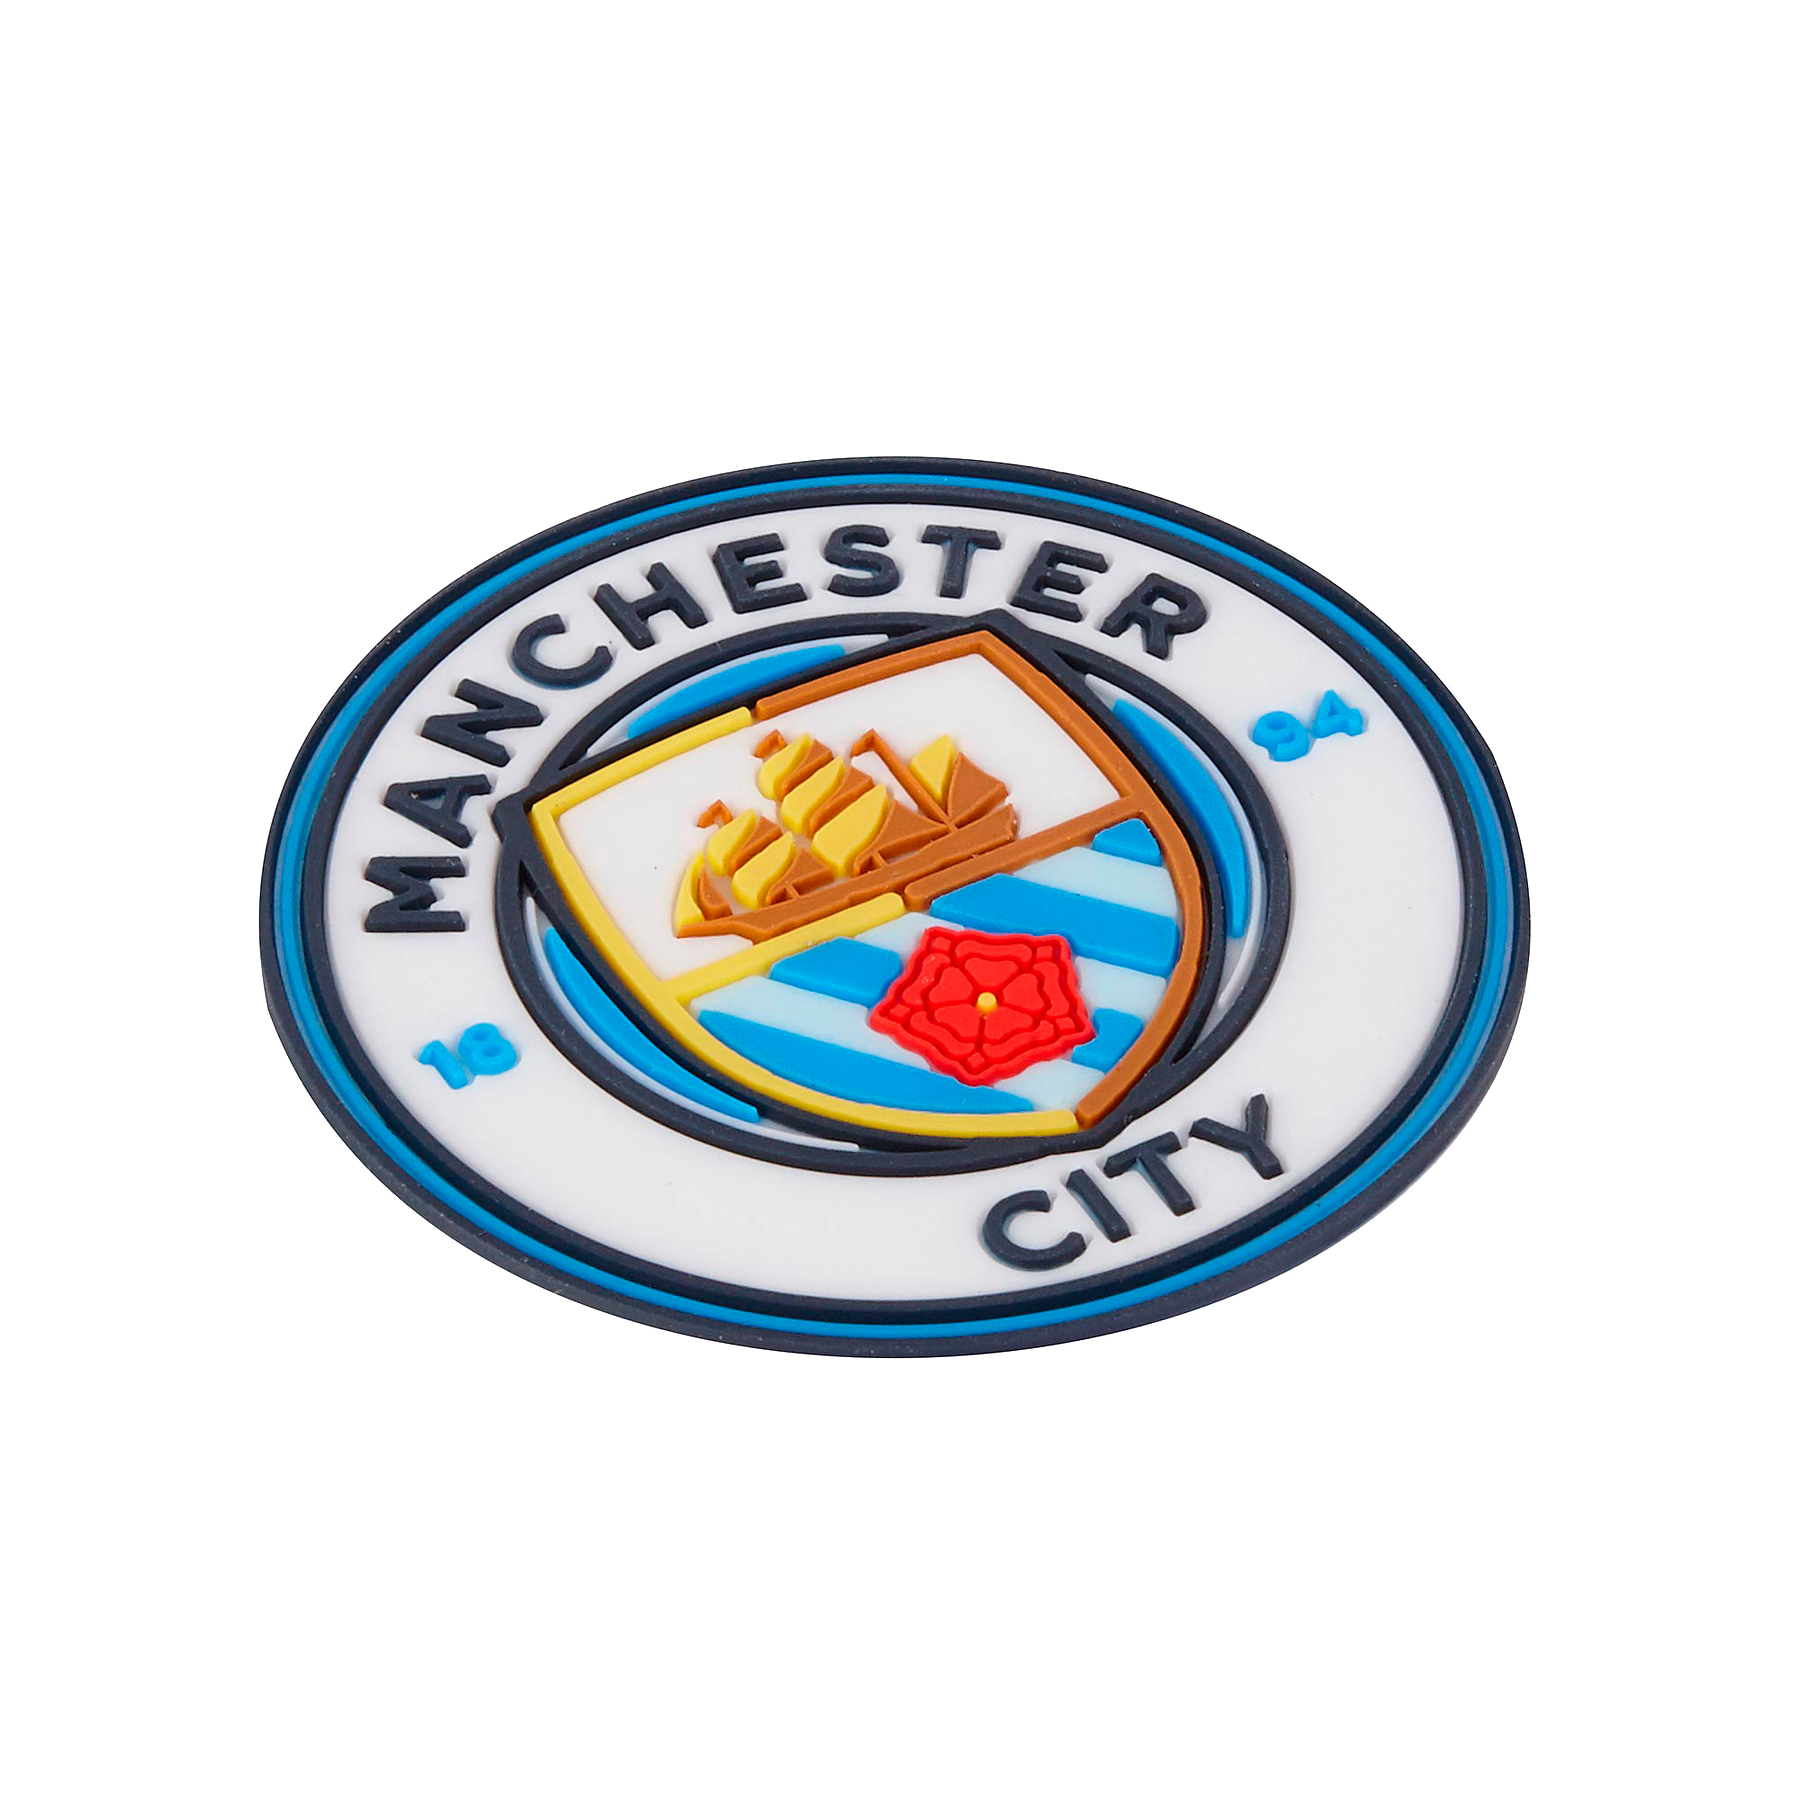 Official Manchester City Football Club 3D Fridge Magnet Crest Logo Shape 